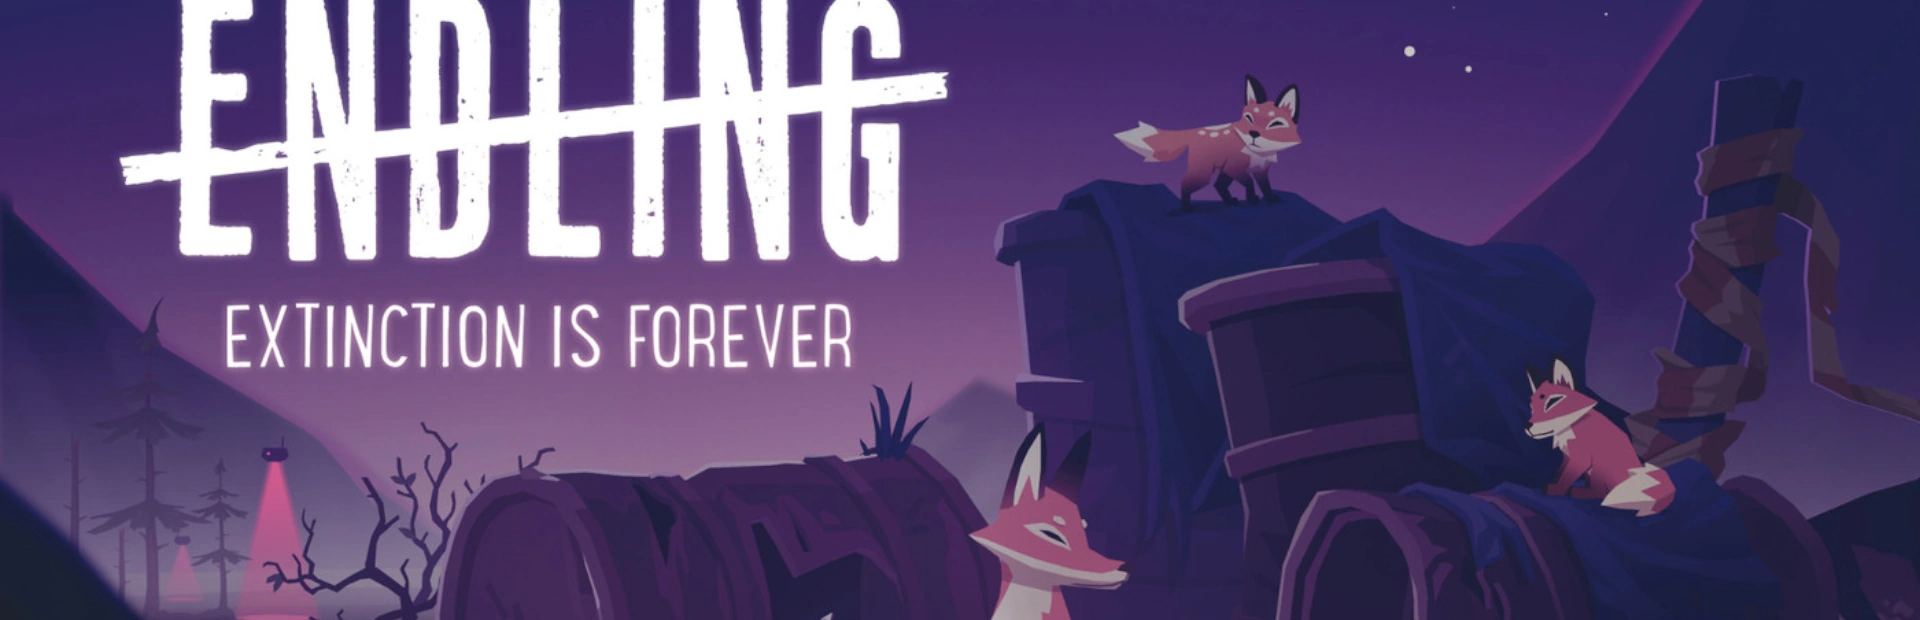 دانلود بازی Endling - Extinction is Forever برای کامپیوتر |گیمباتو